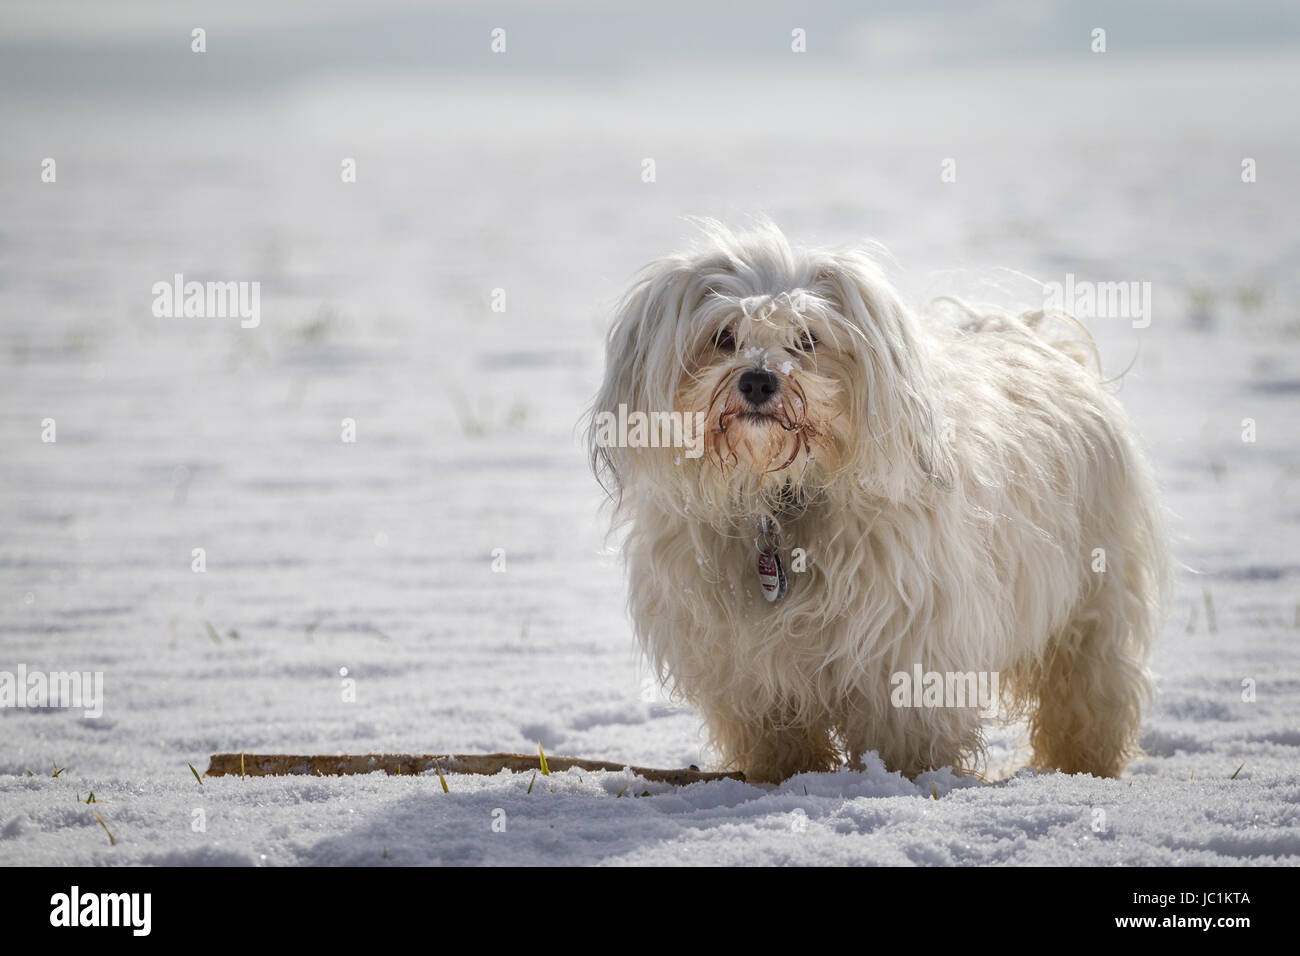 Kleiner weißer Hund steht im Schnee neben einem Stock. Stock Photo